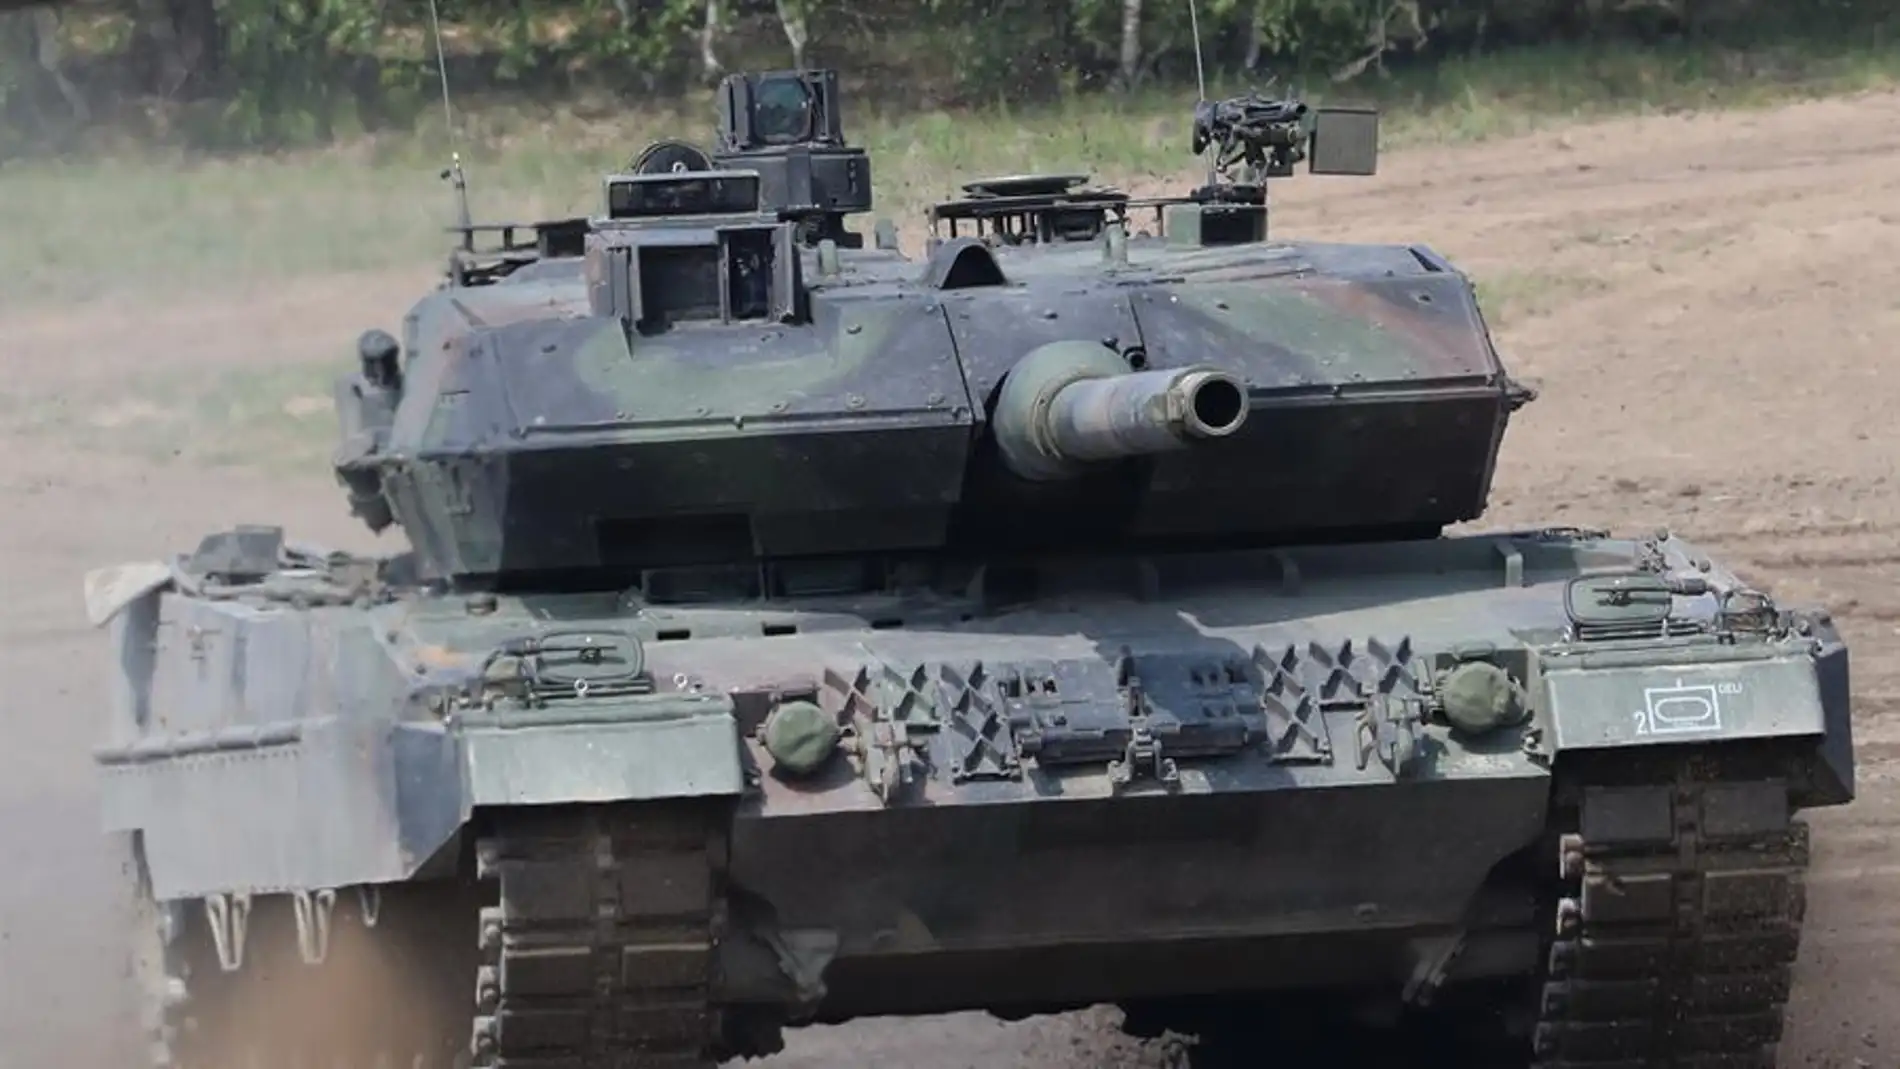 Misiles, carros de combate, artillería... Así es el lote de armas que incluye el lote que España manda a Ucrania